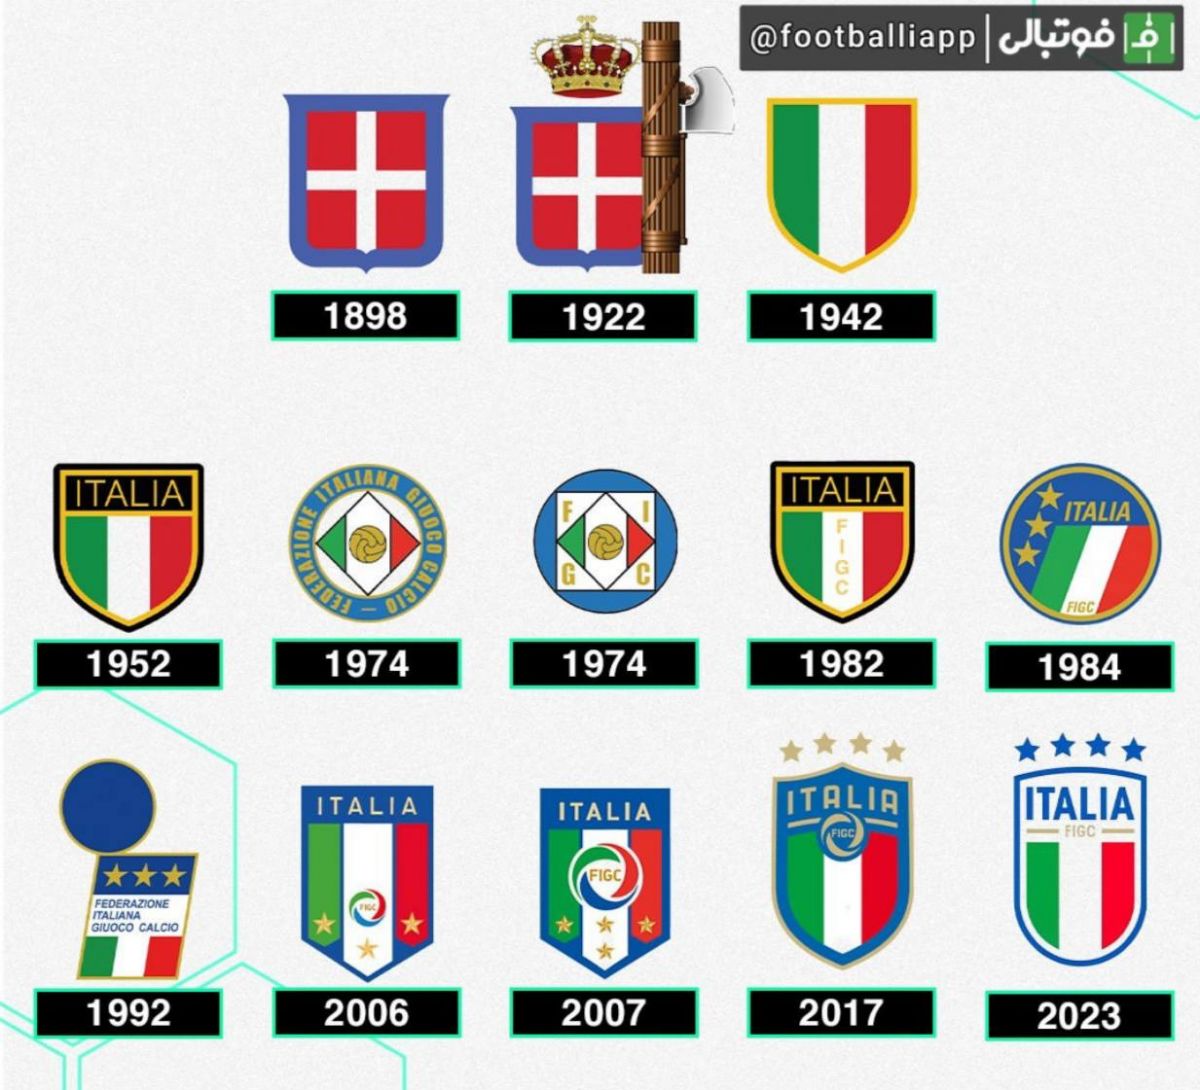 به بهانه رونمایی از لوگوی جدید فدراسیون فوتبال ایتالیا برای سال ۲۰۲۳؛ لوگوی فدراسیون فوتبال ایتالیا در گذر زمان